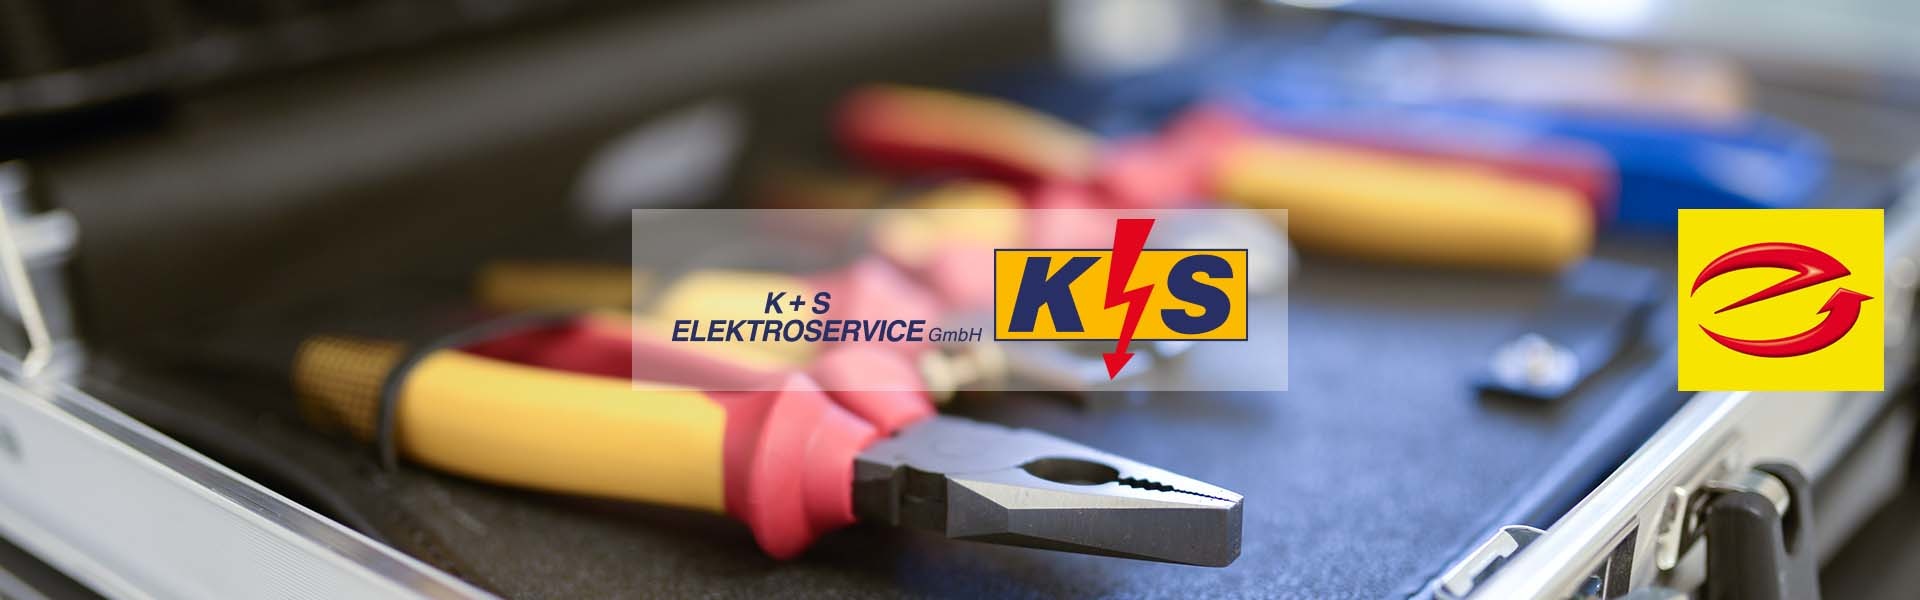 K + S Elektroservice GmbH in Potsdam